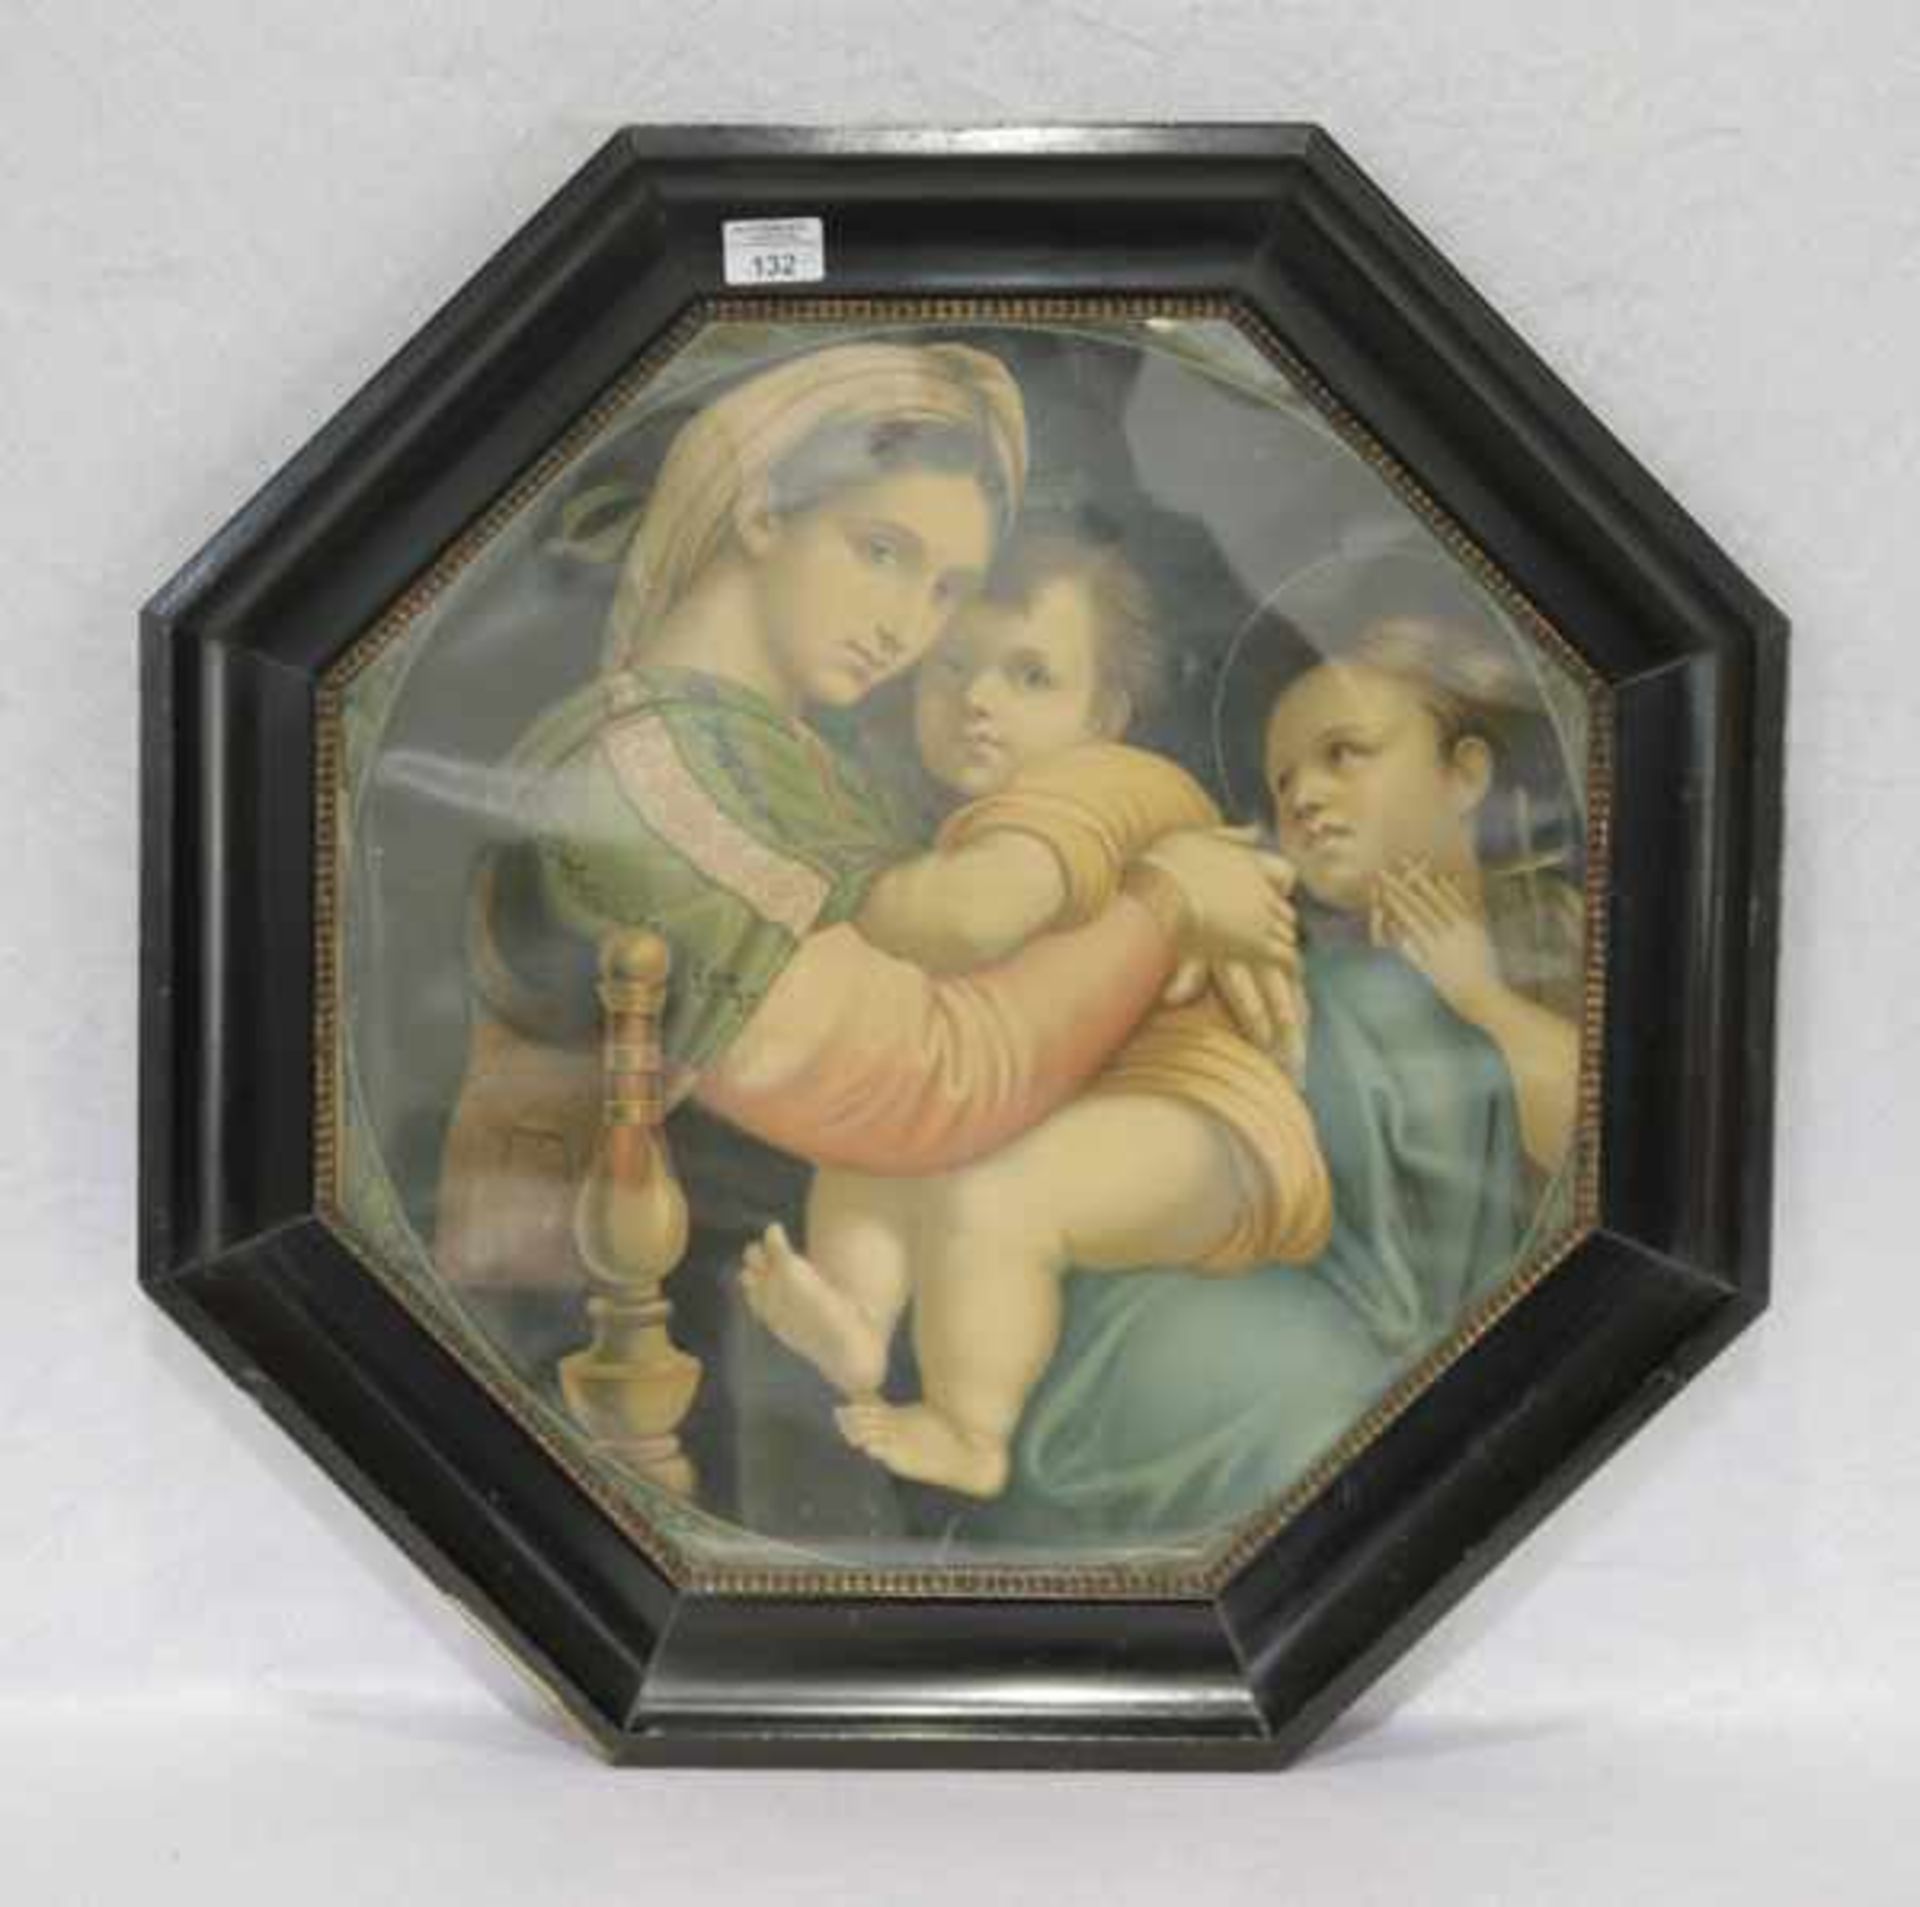 Druck 'Maria mit Kind', unter Glas in achteckigem Rahmen, Rahmen beschädigt, incl. Rahmen 65 cm x 64